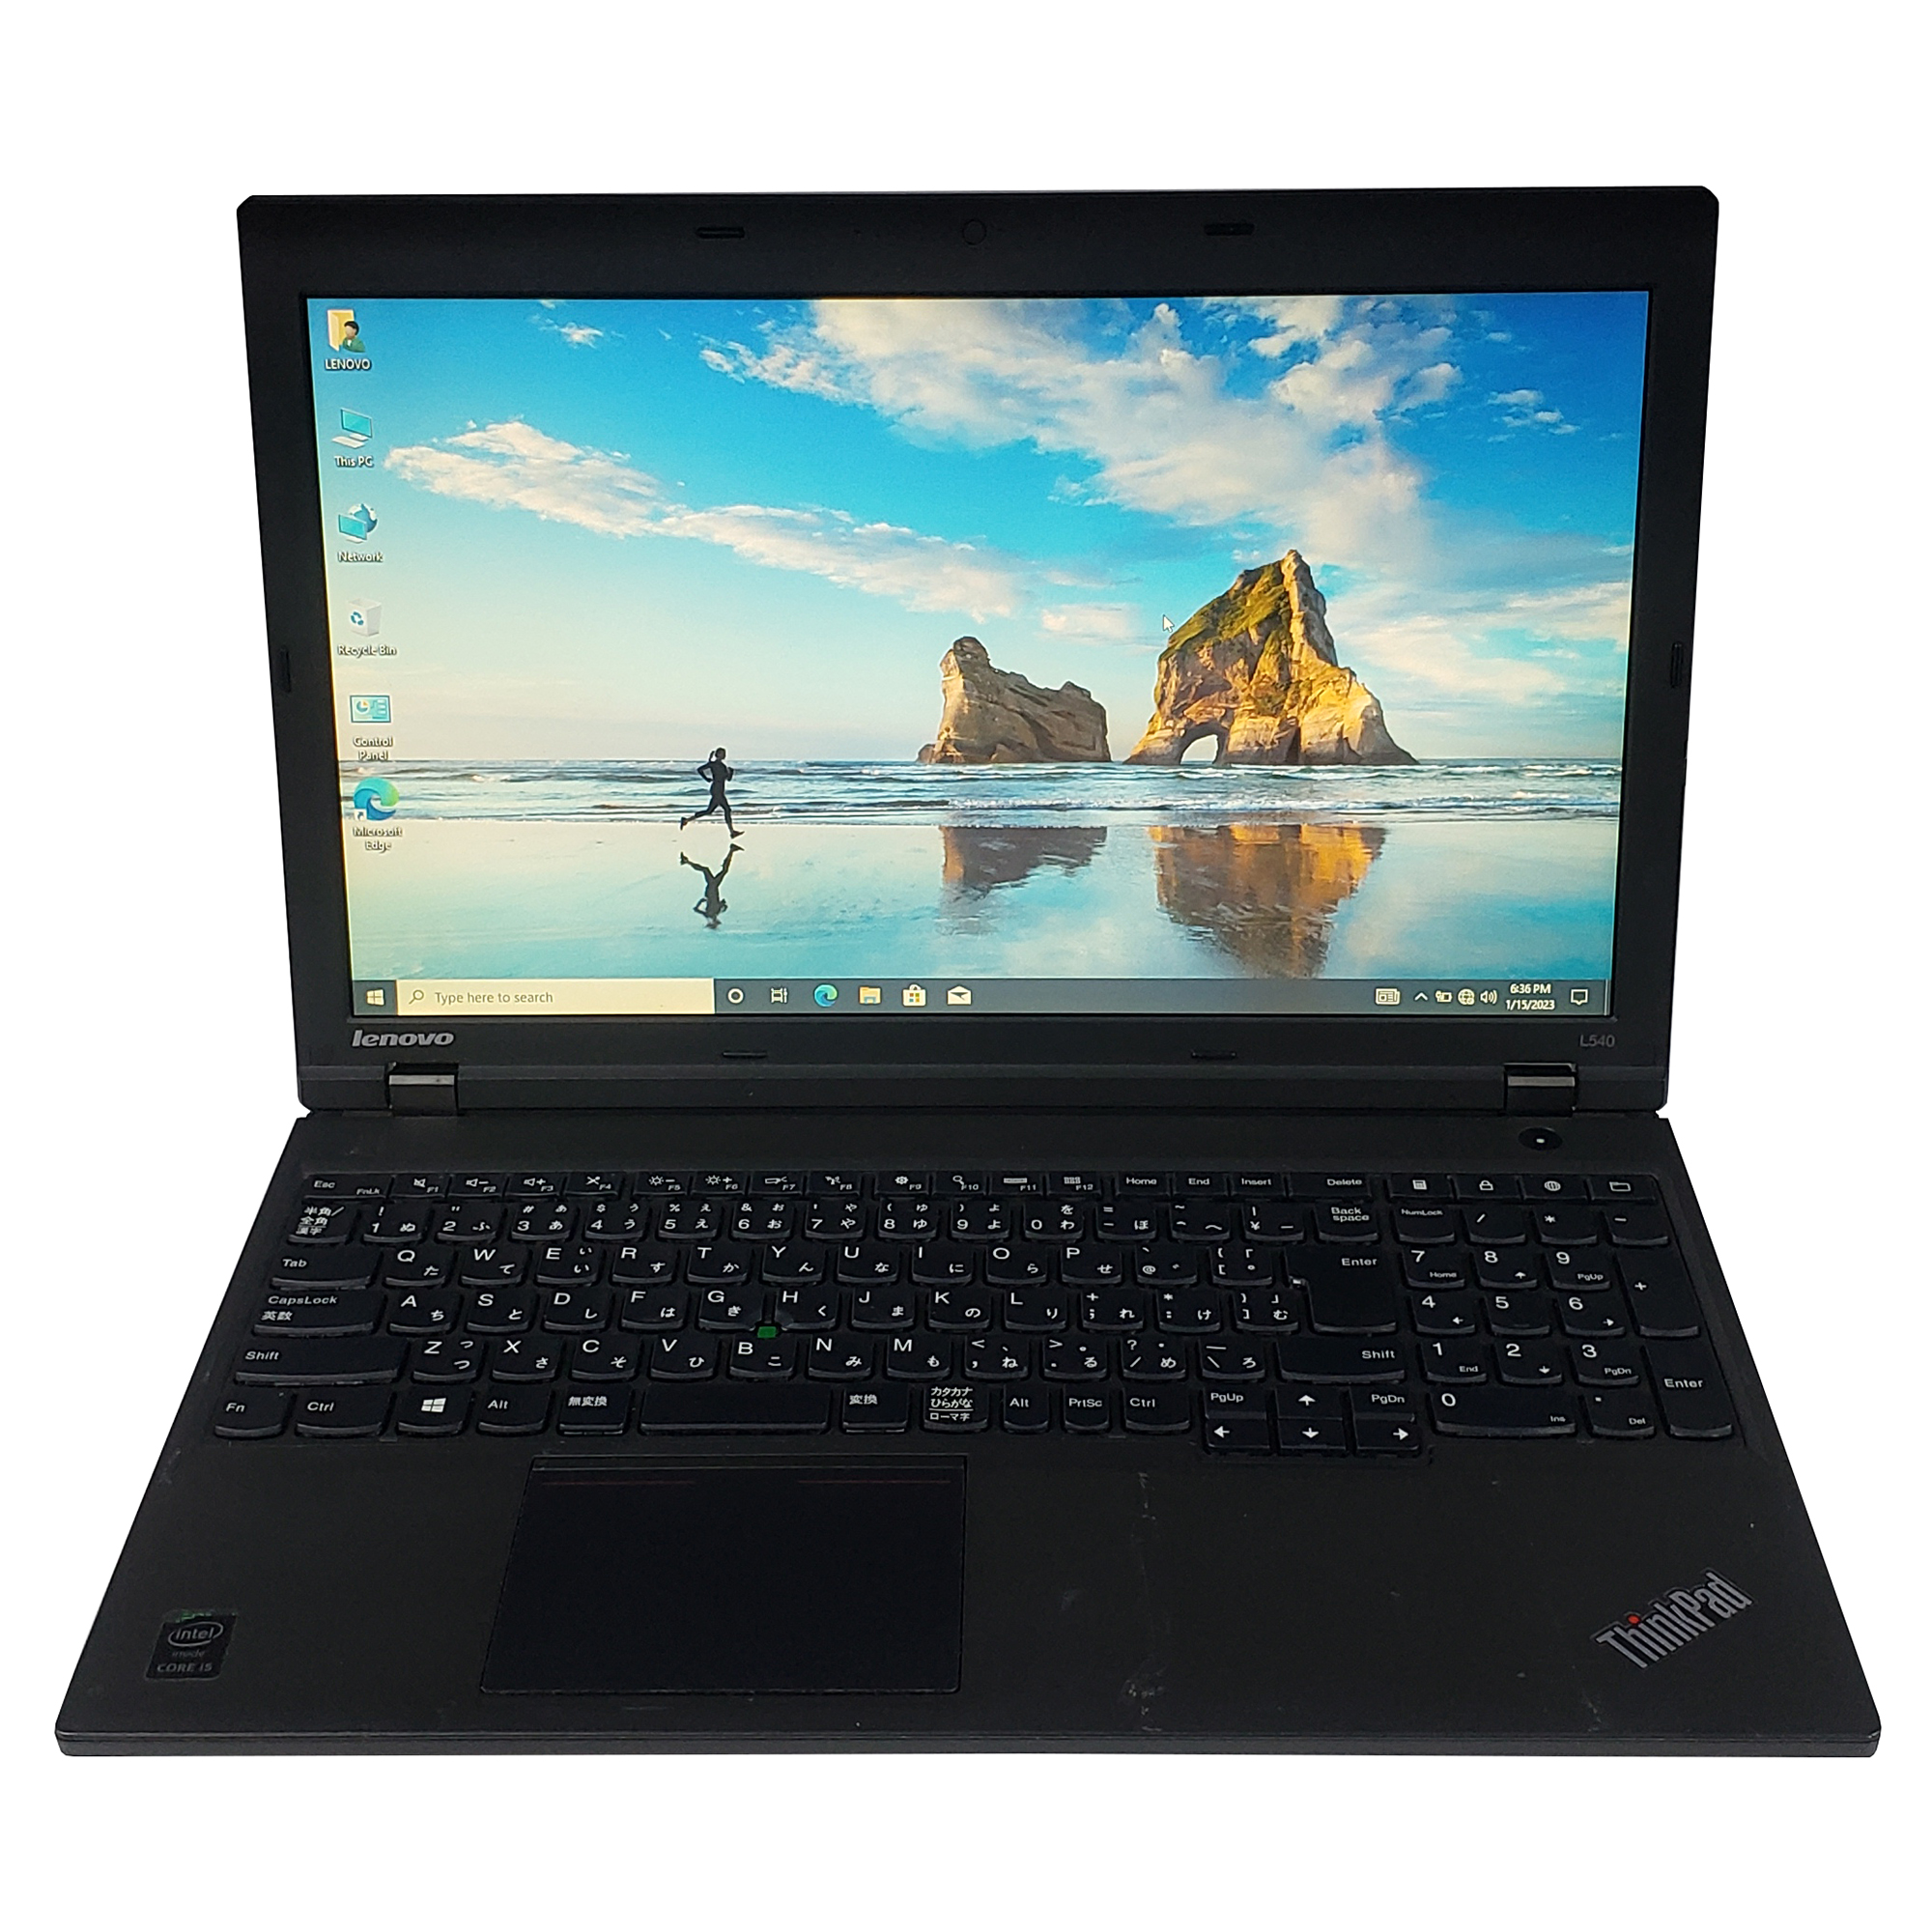 Lenovo ThinkPad L540, i5-4210M, 2.6GHZ, 4GB Ram, 500GB HDD, Intel 